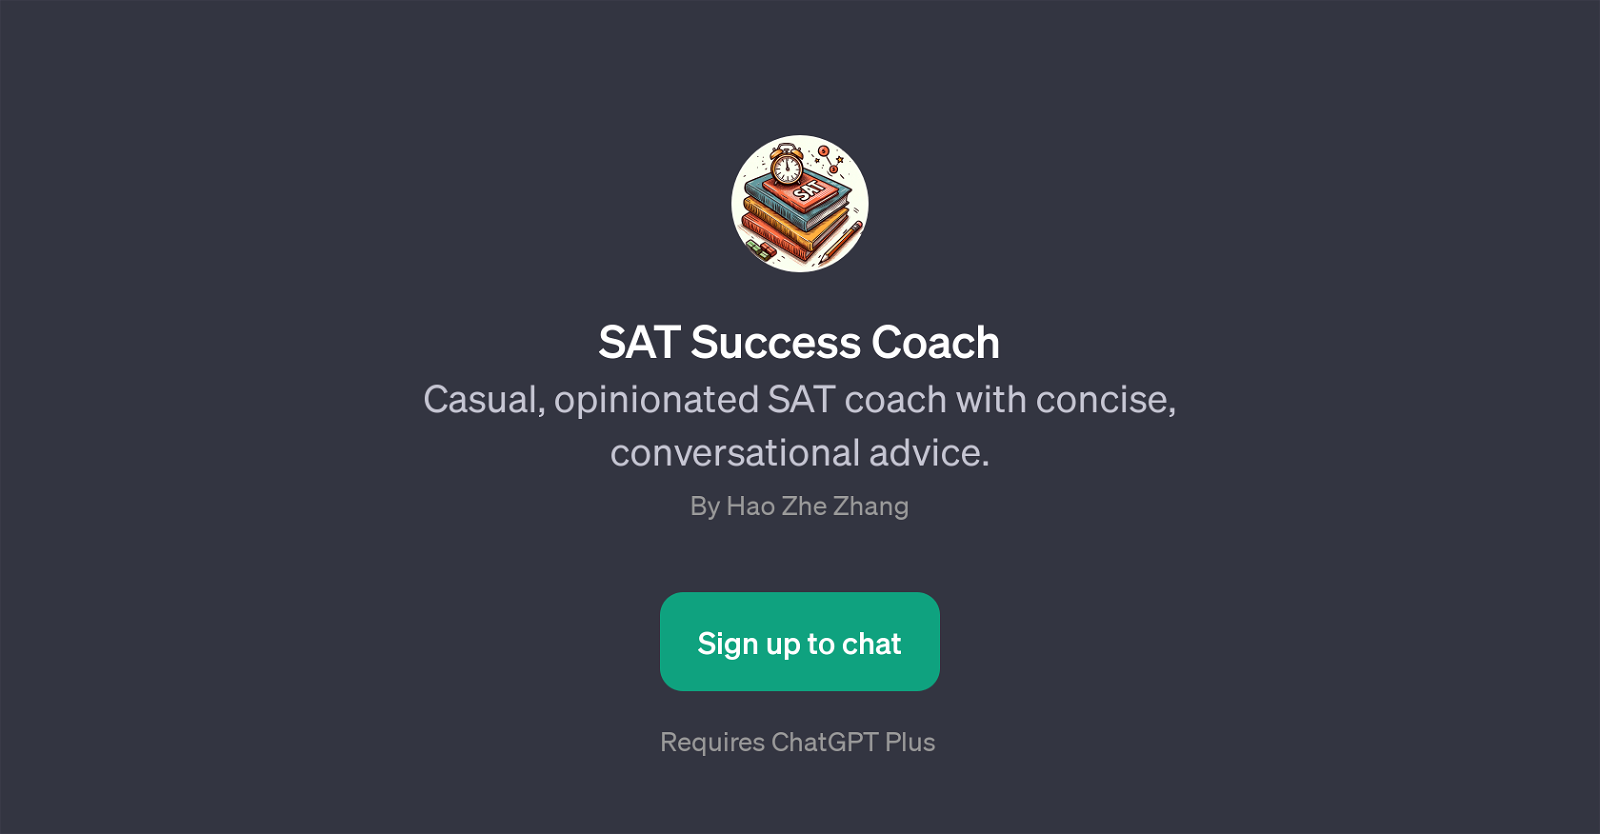 SAT Success Coach website